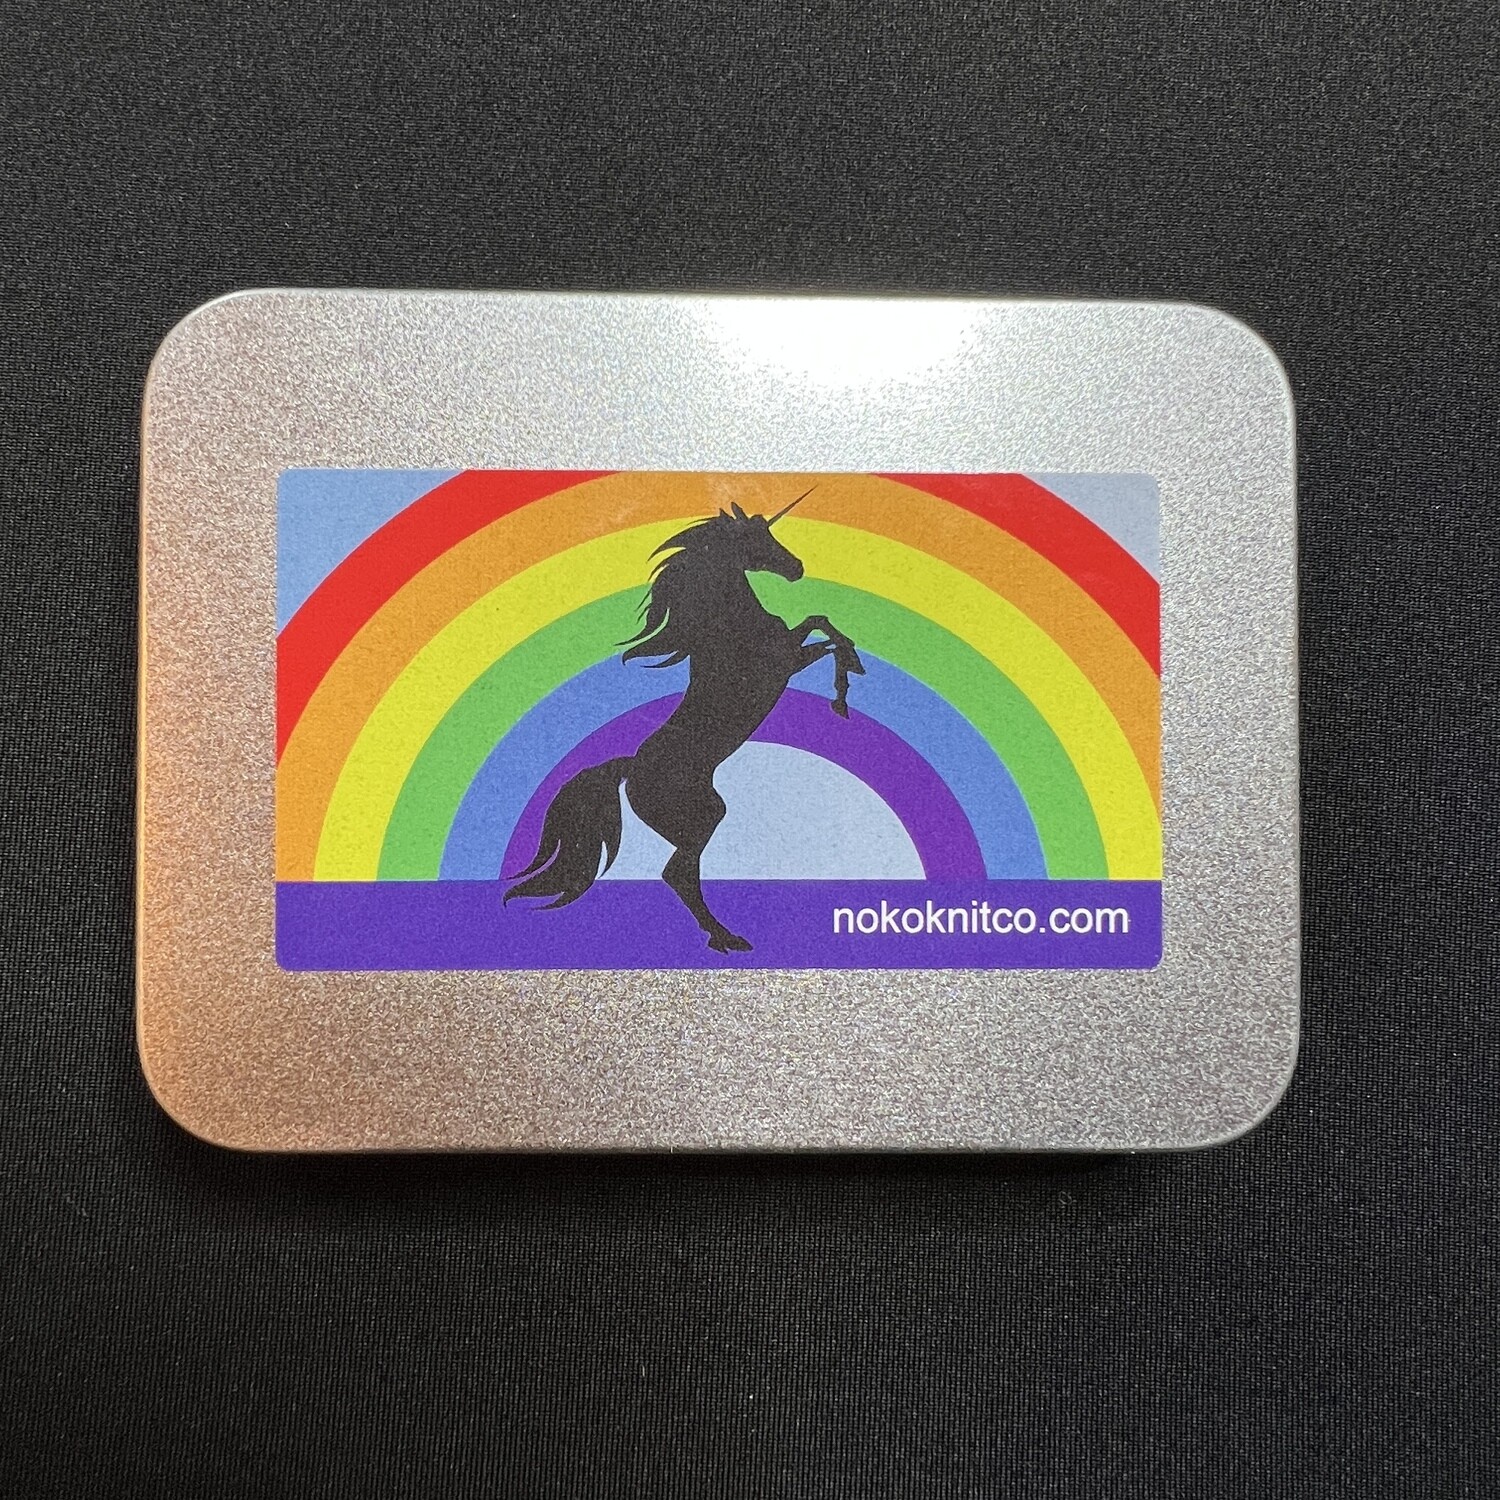 Knitter's Toolkit - Unicorn Rainbow - Metal Box